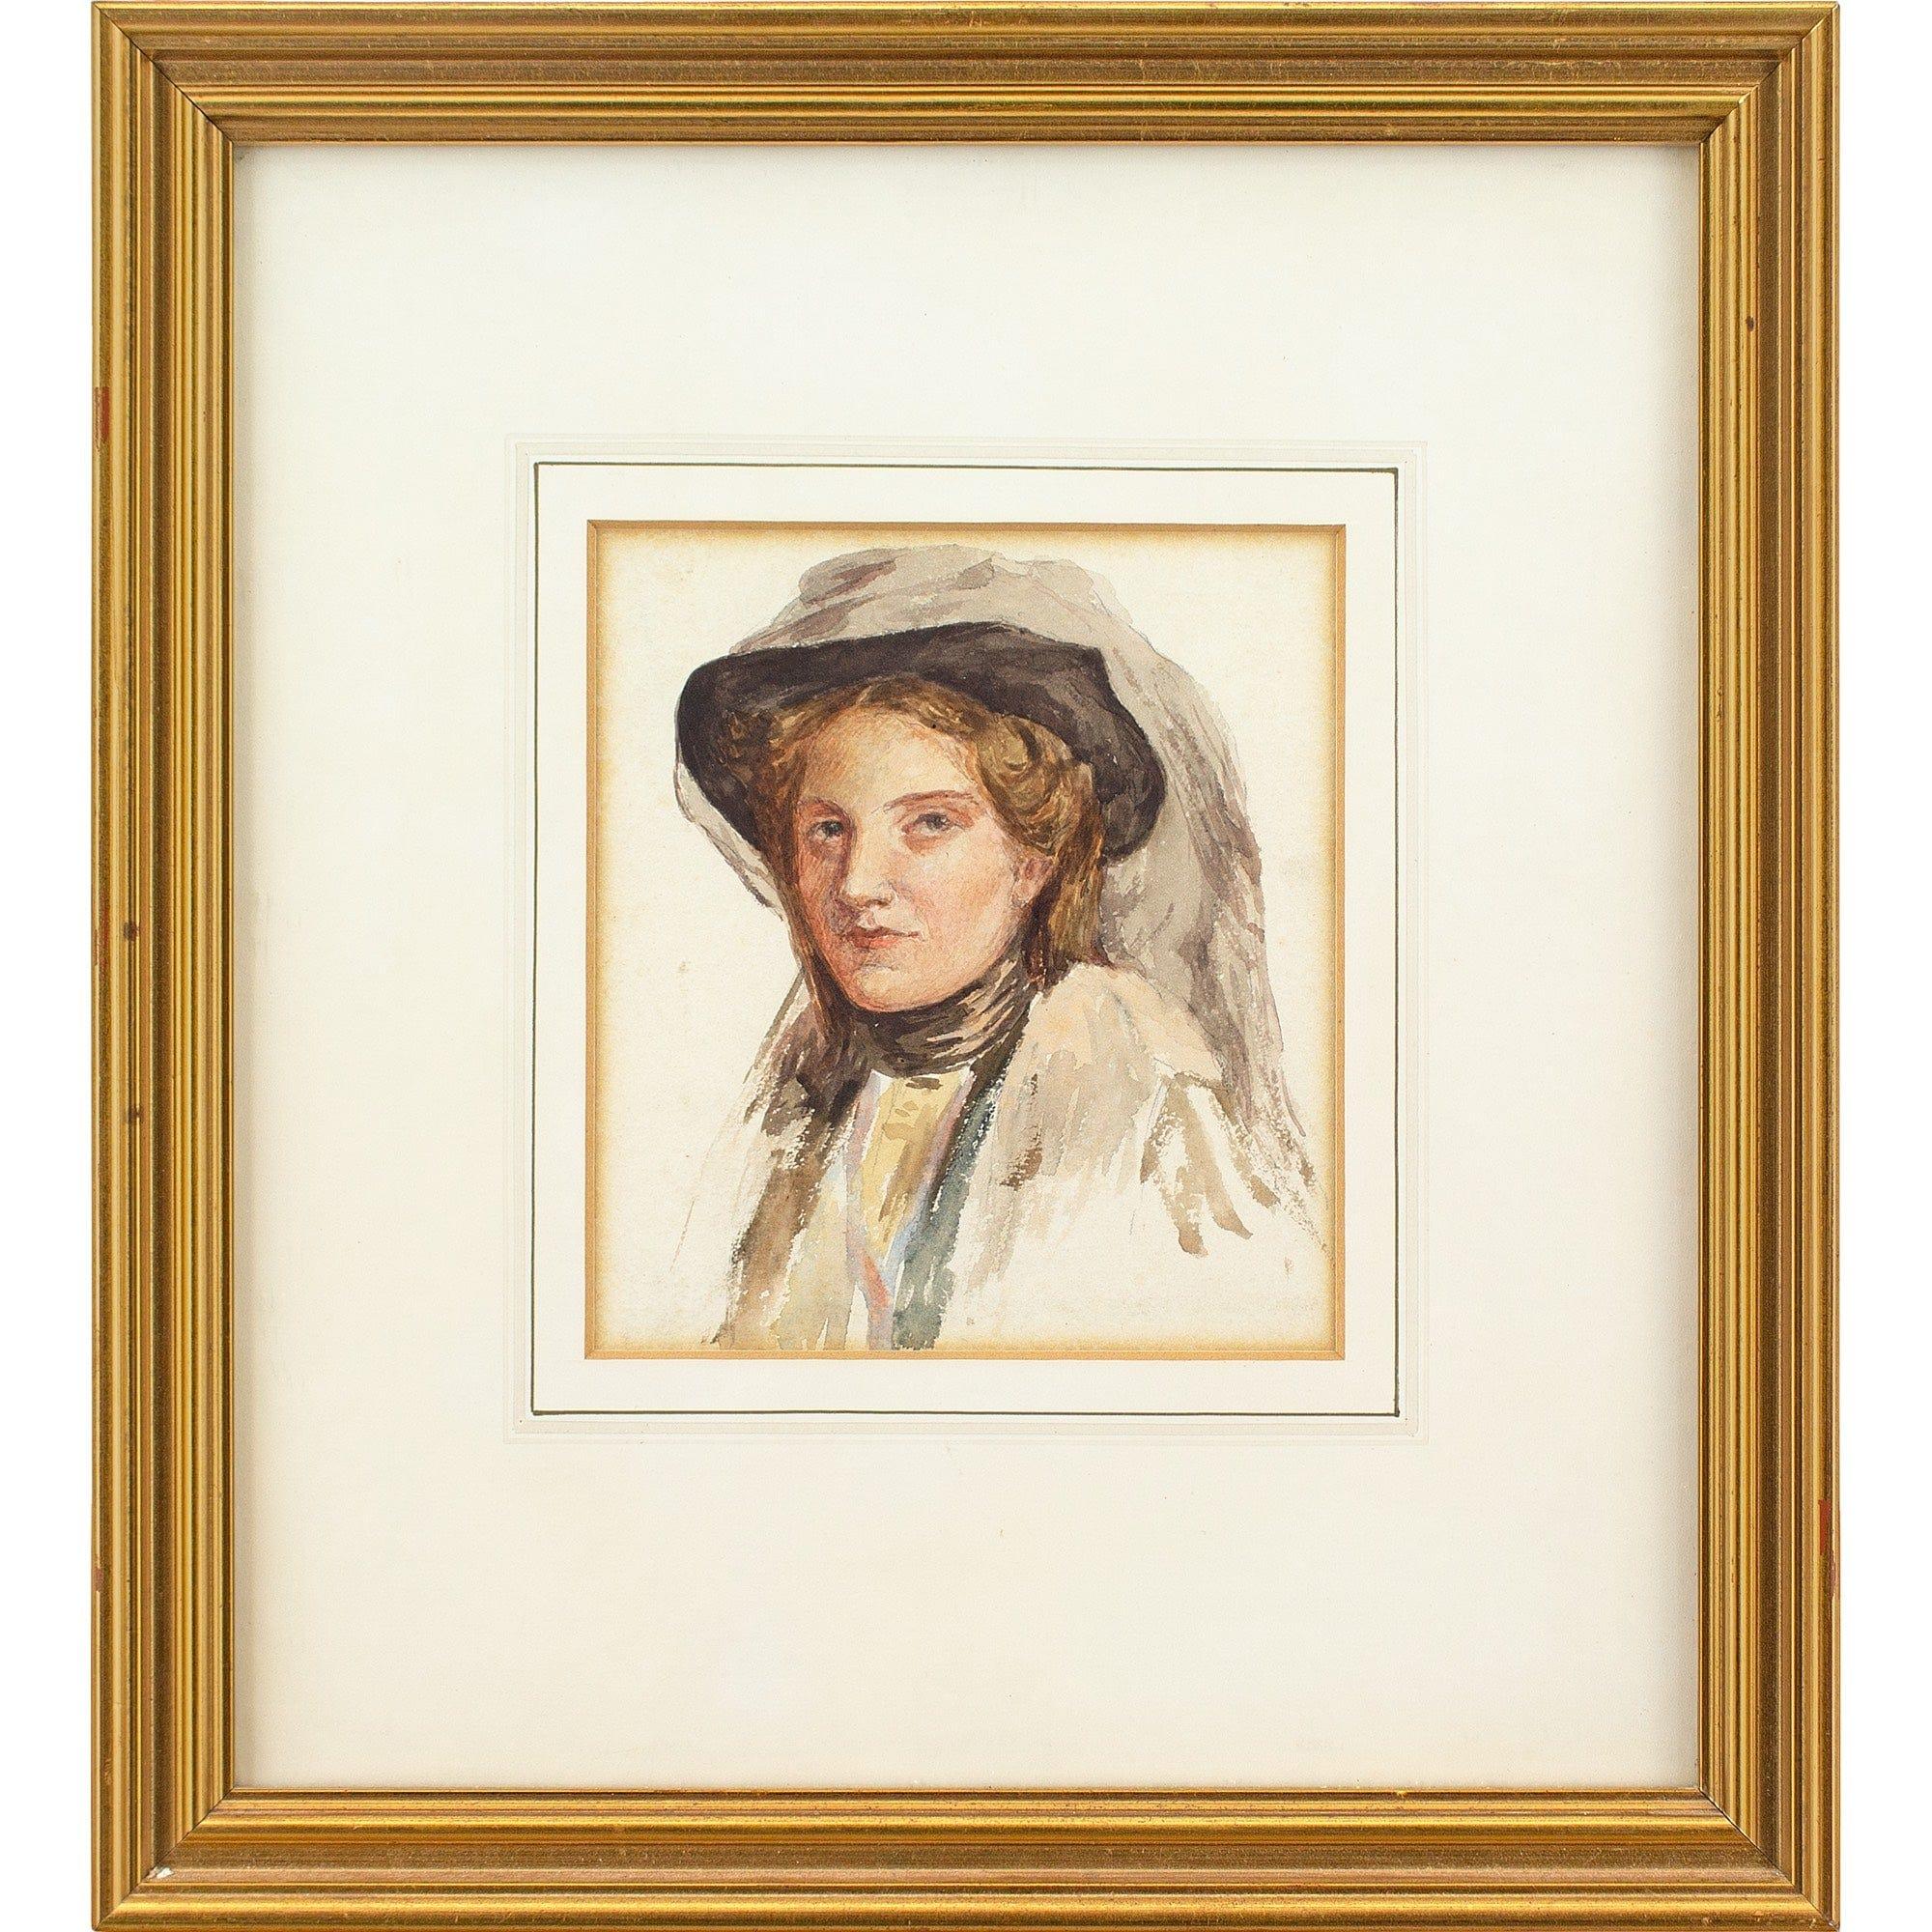 Fin du XIXe siècle École britannique, étude de portrait d'une femme, aquarelle